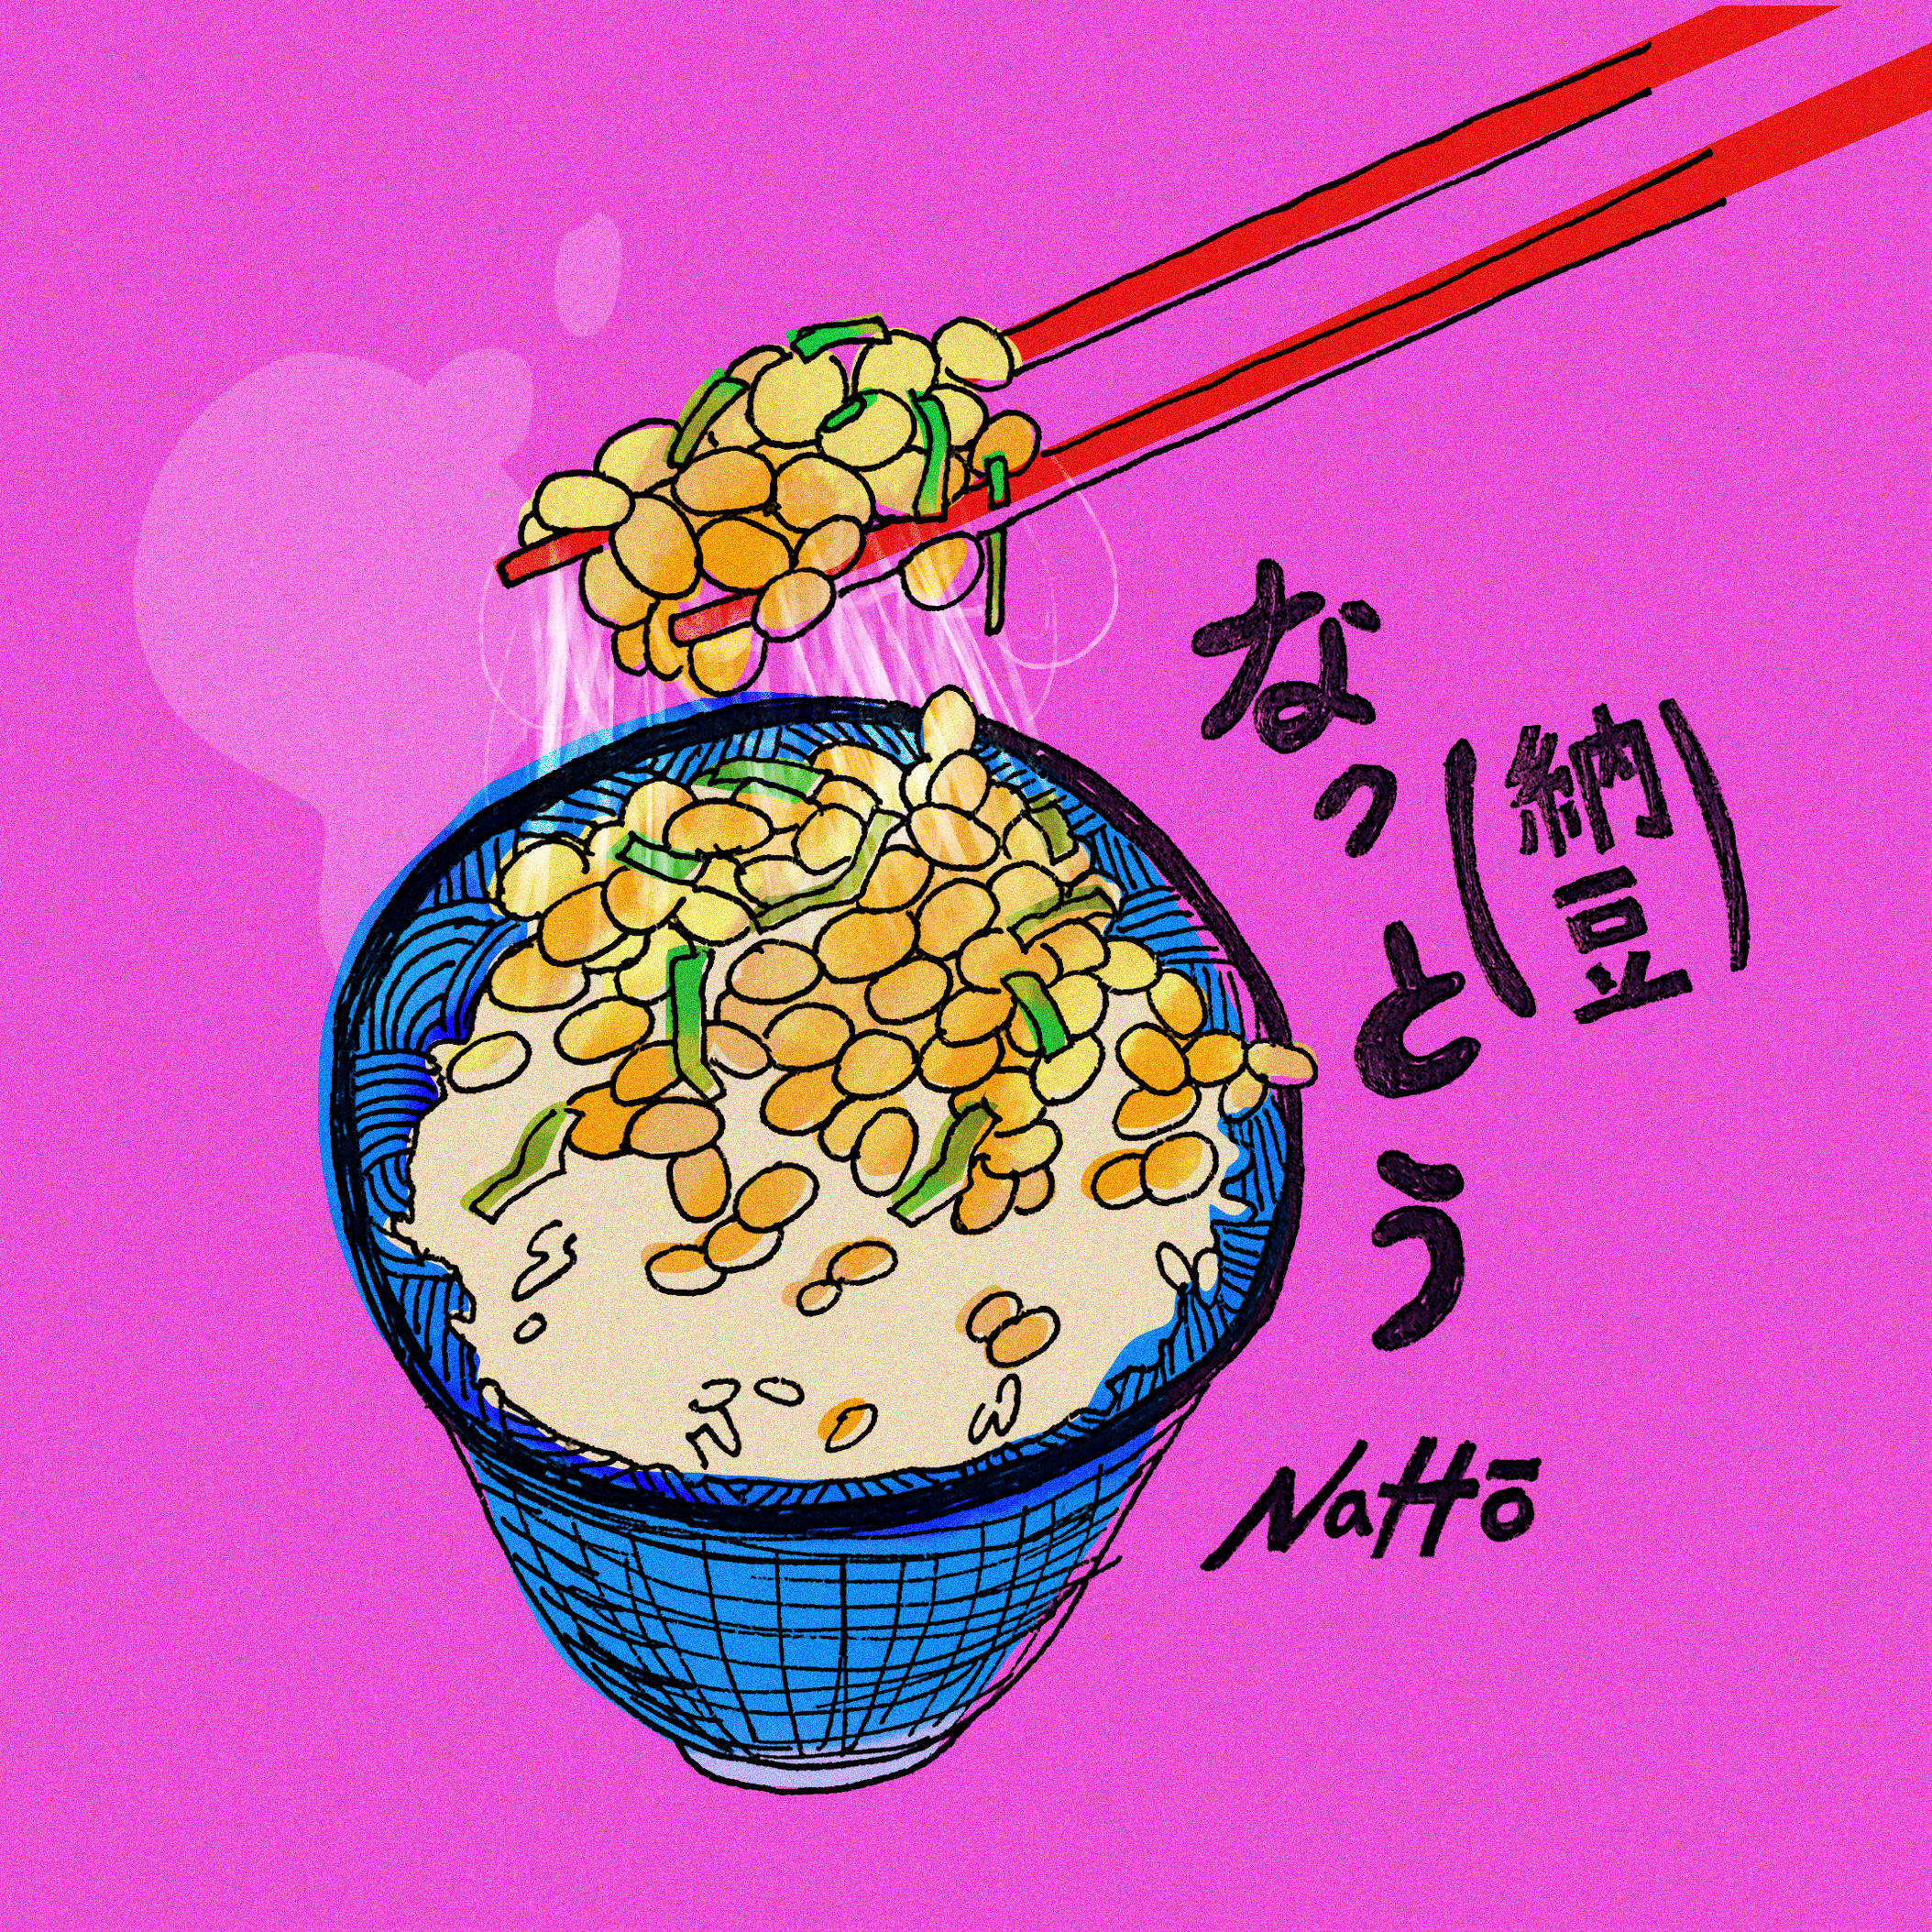 Natto.jpg